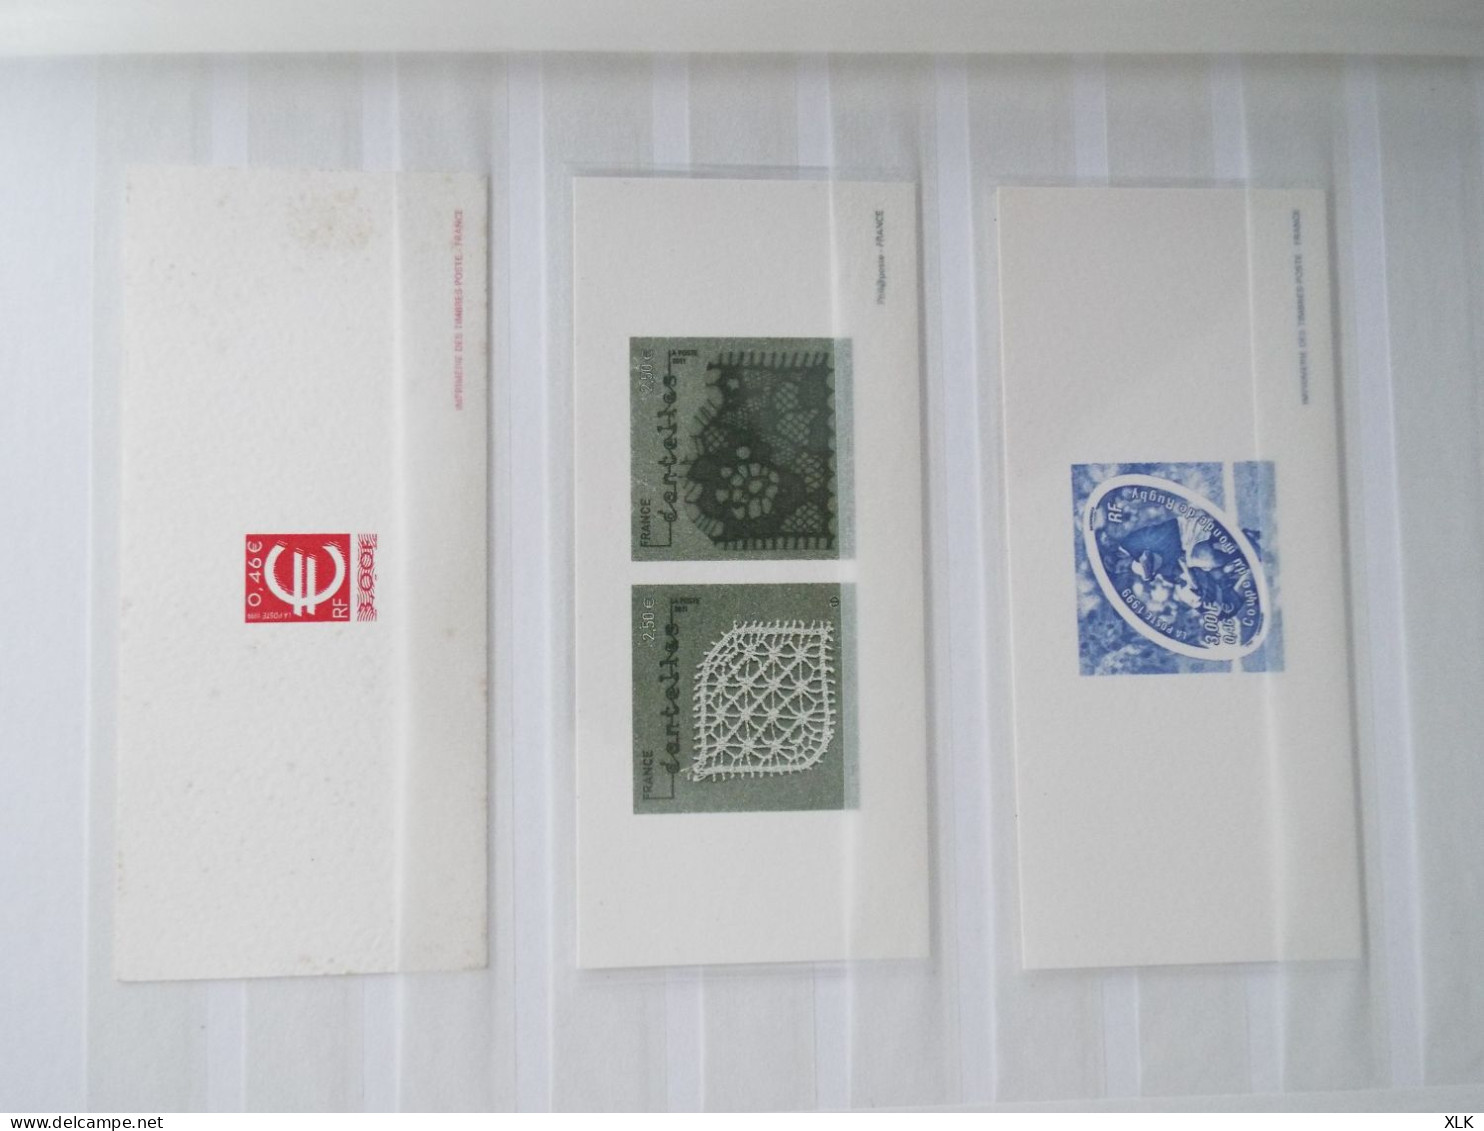 France - 2 albums - Gravure imprimerie timbres poste dont les Marianne